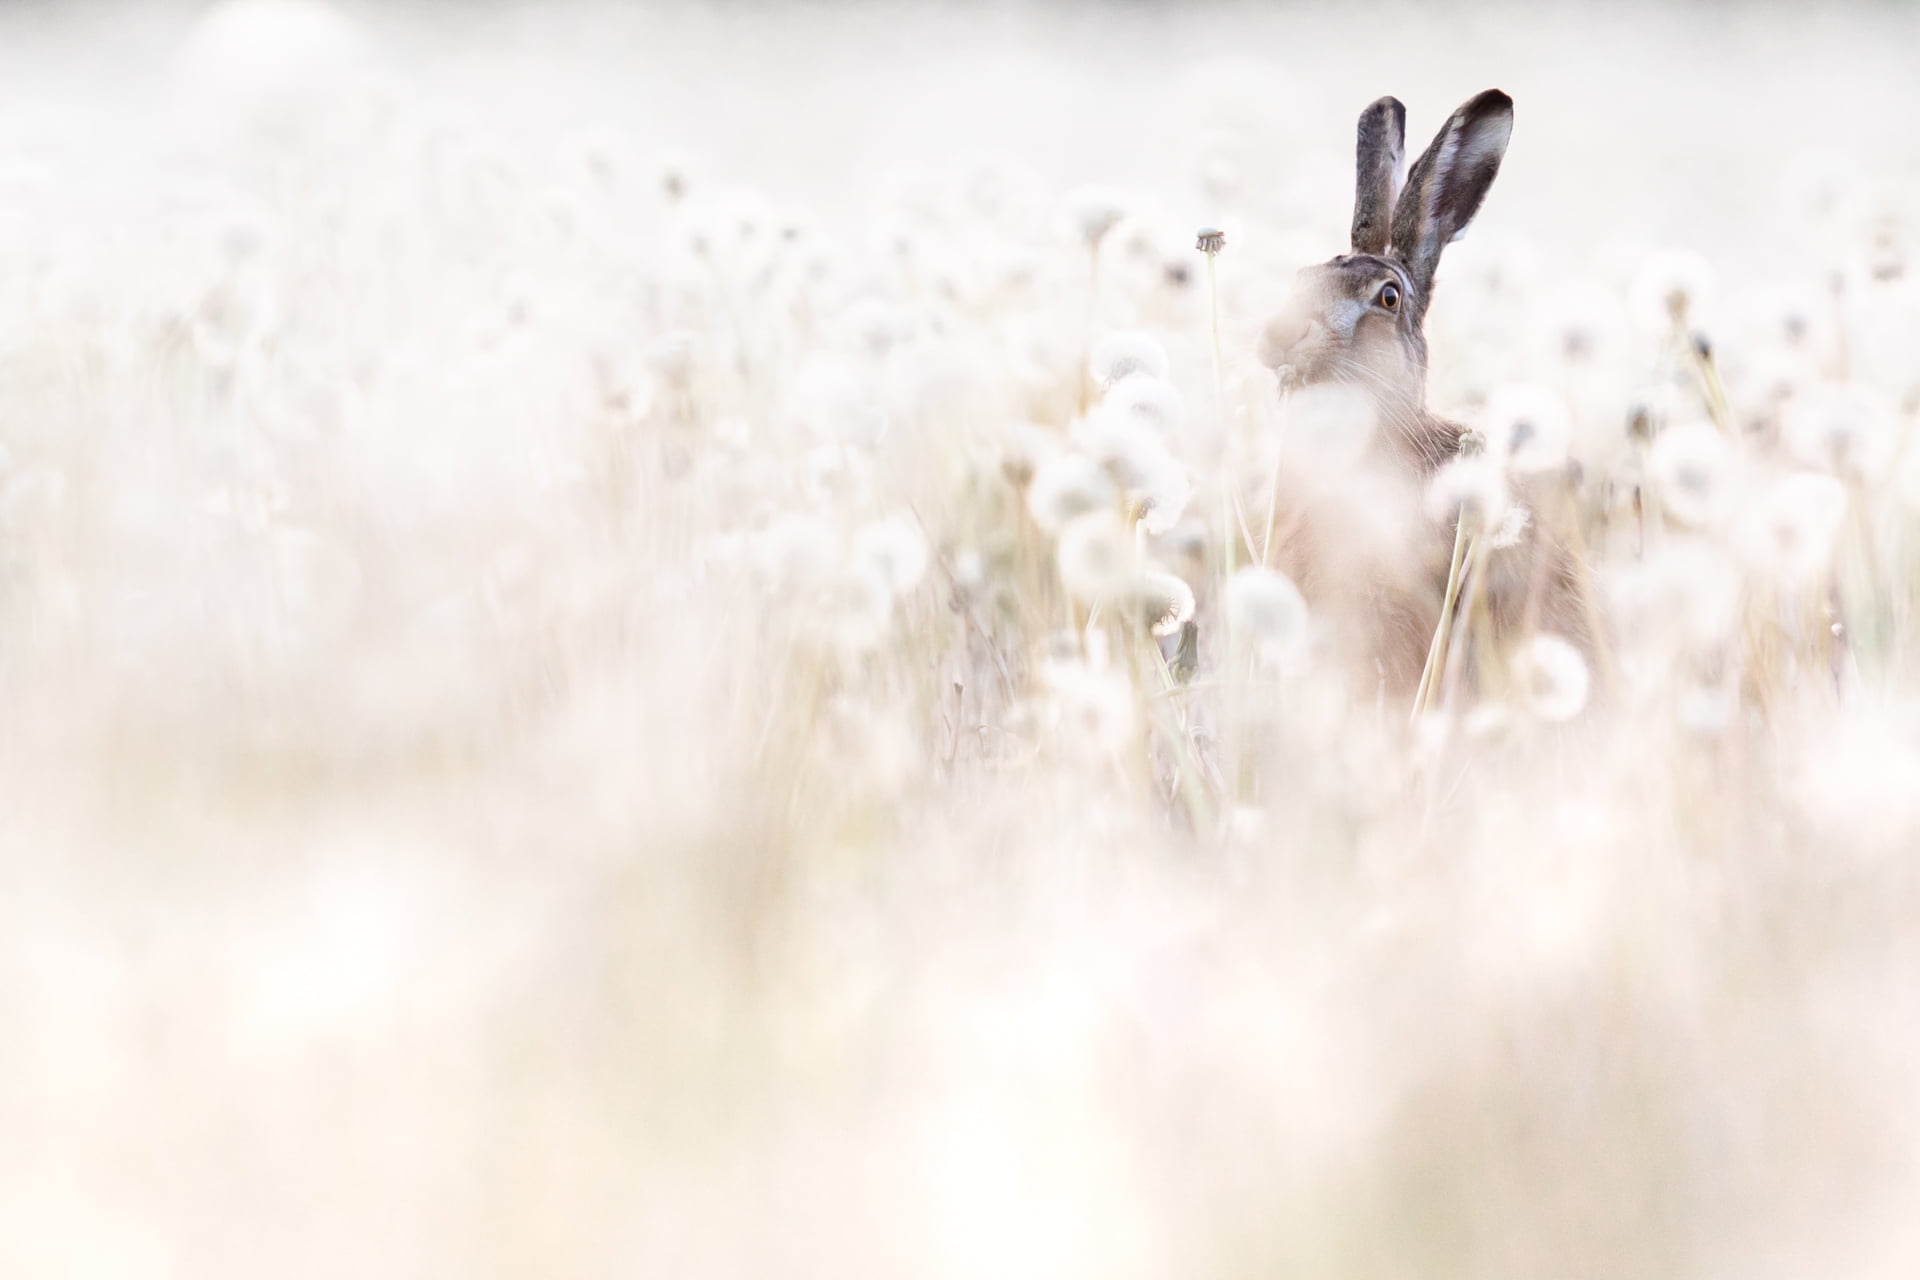 Lièvre d'Europe mange dans un champ de pissenlit, France - European hare eats in a dandelion field, France / Lepus europaeus